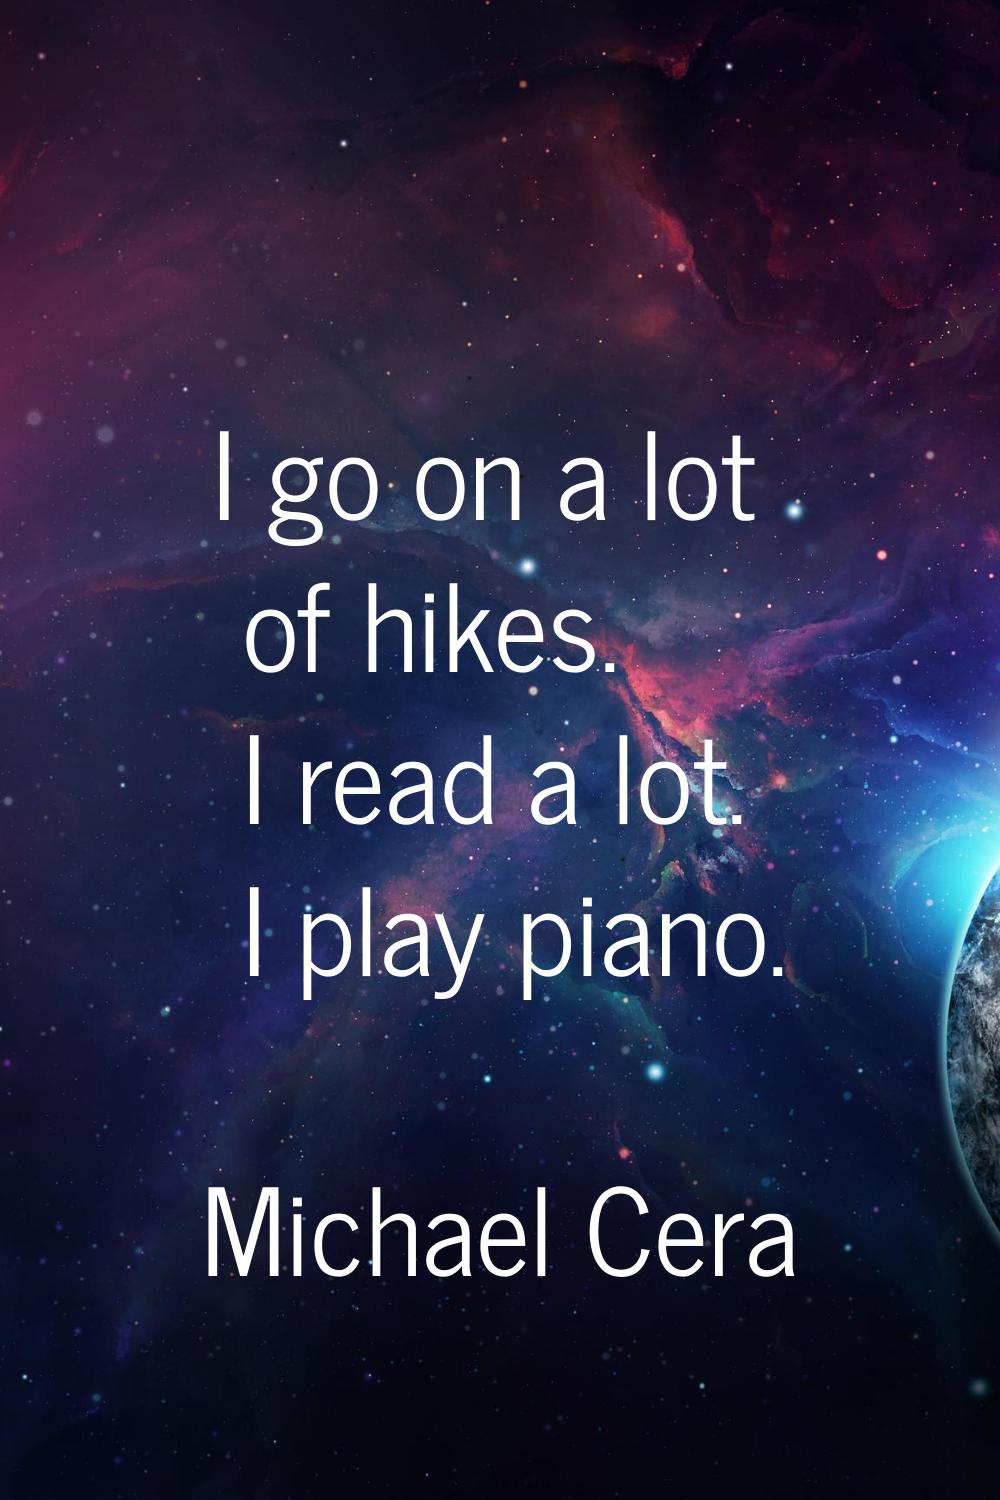 I go on a lot of hikes. I read a lot. I play piano.